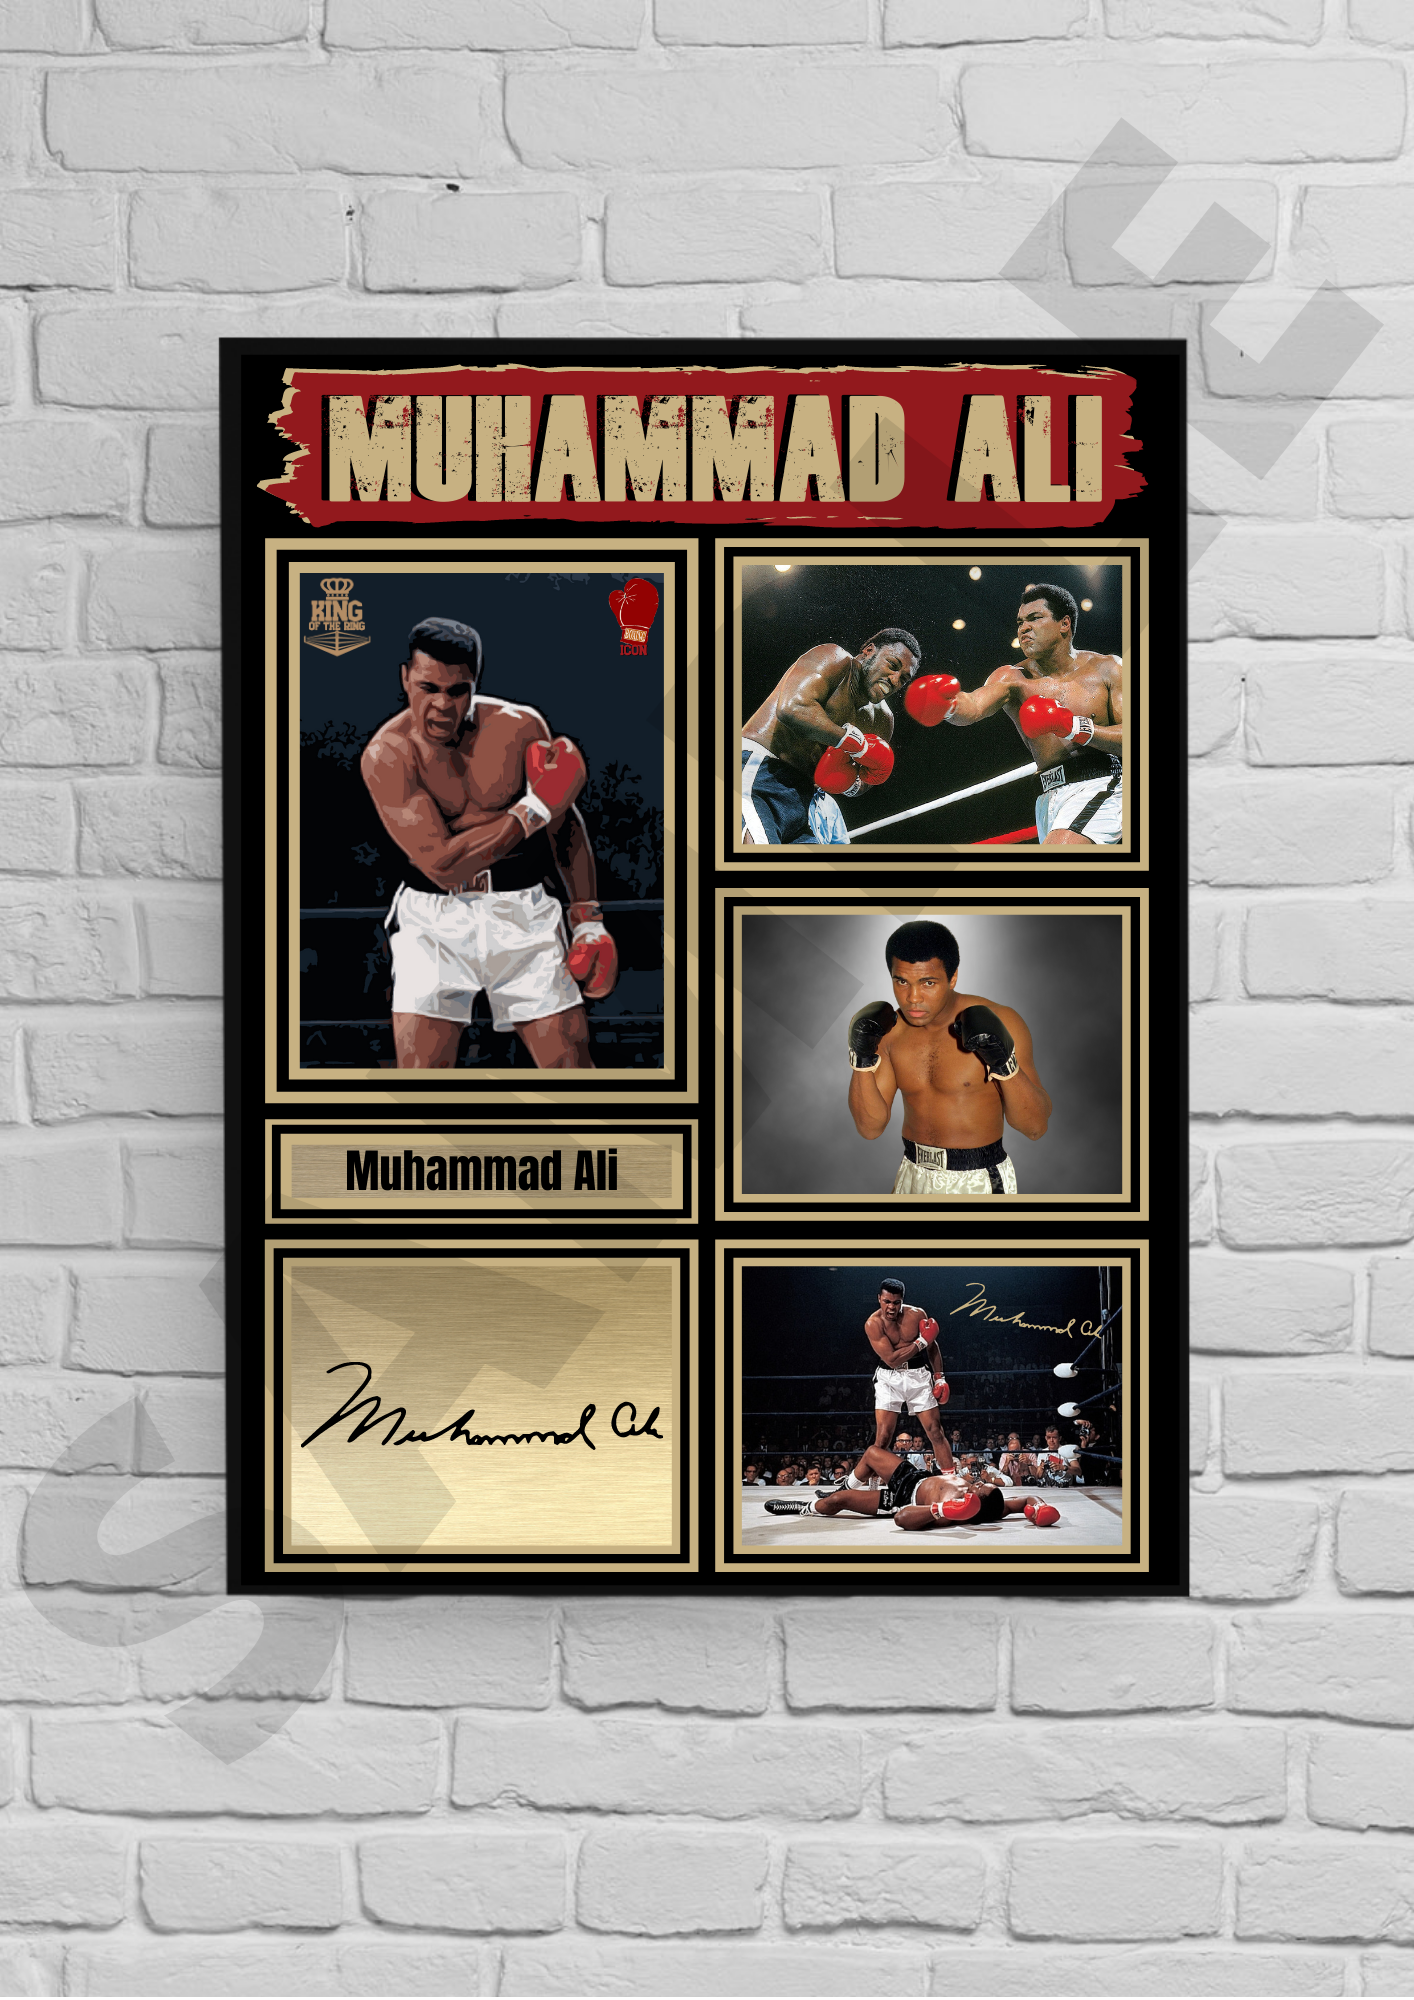 Muhammad Ali (Boxing) #55 - Memorabilia/Collectible/Signed print